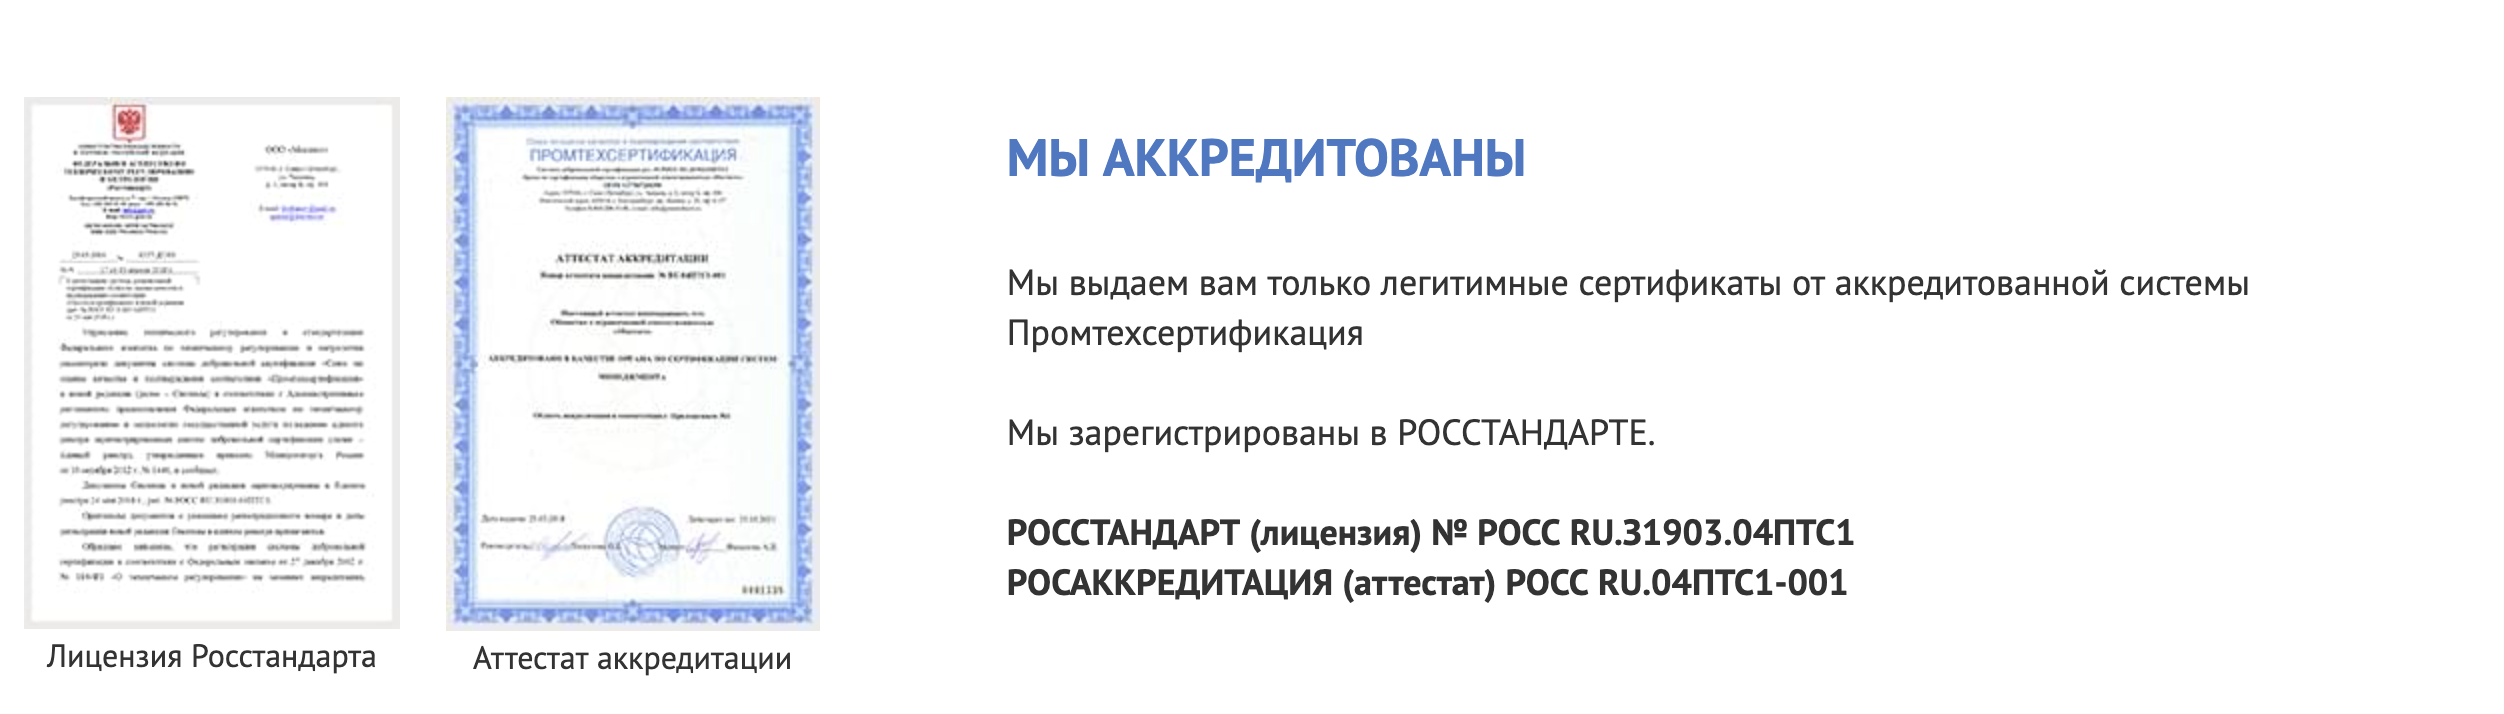 Фгуп тест санкт петербург официальный сайт